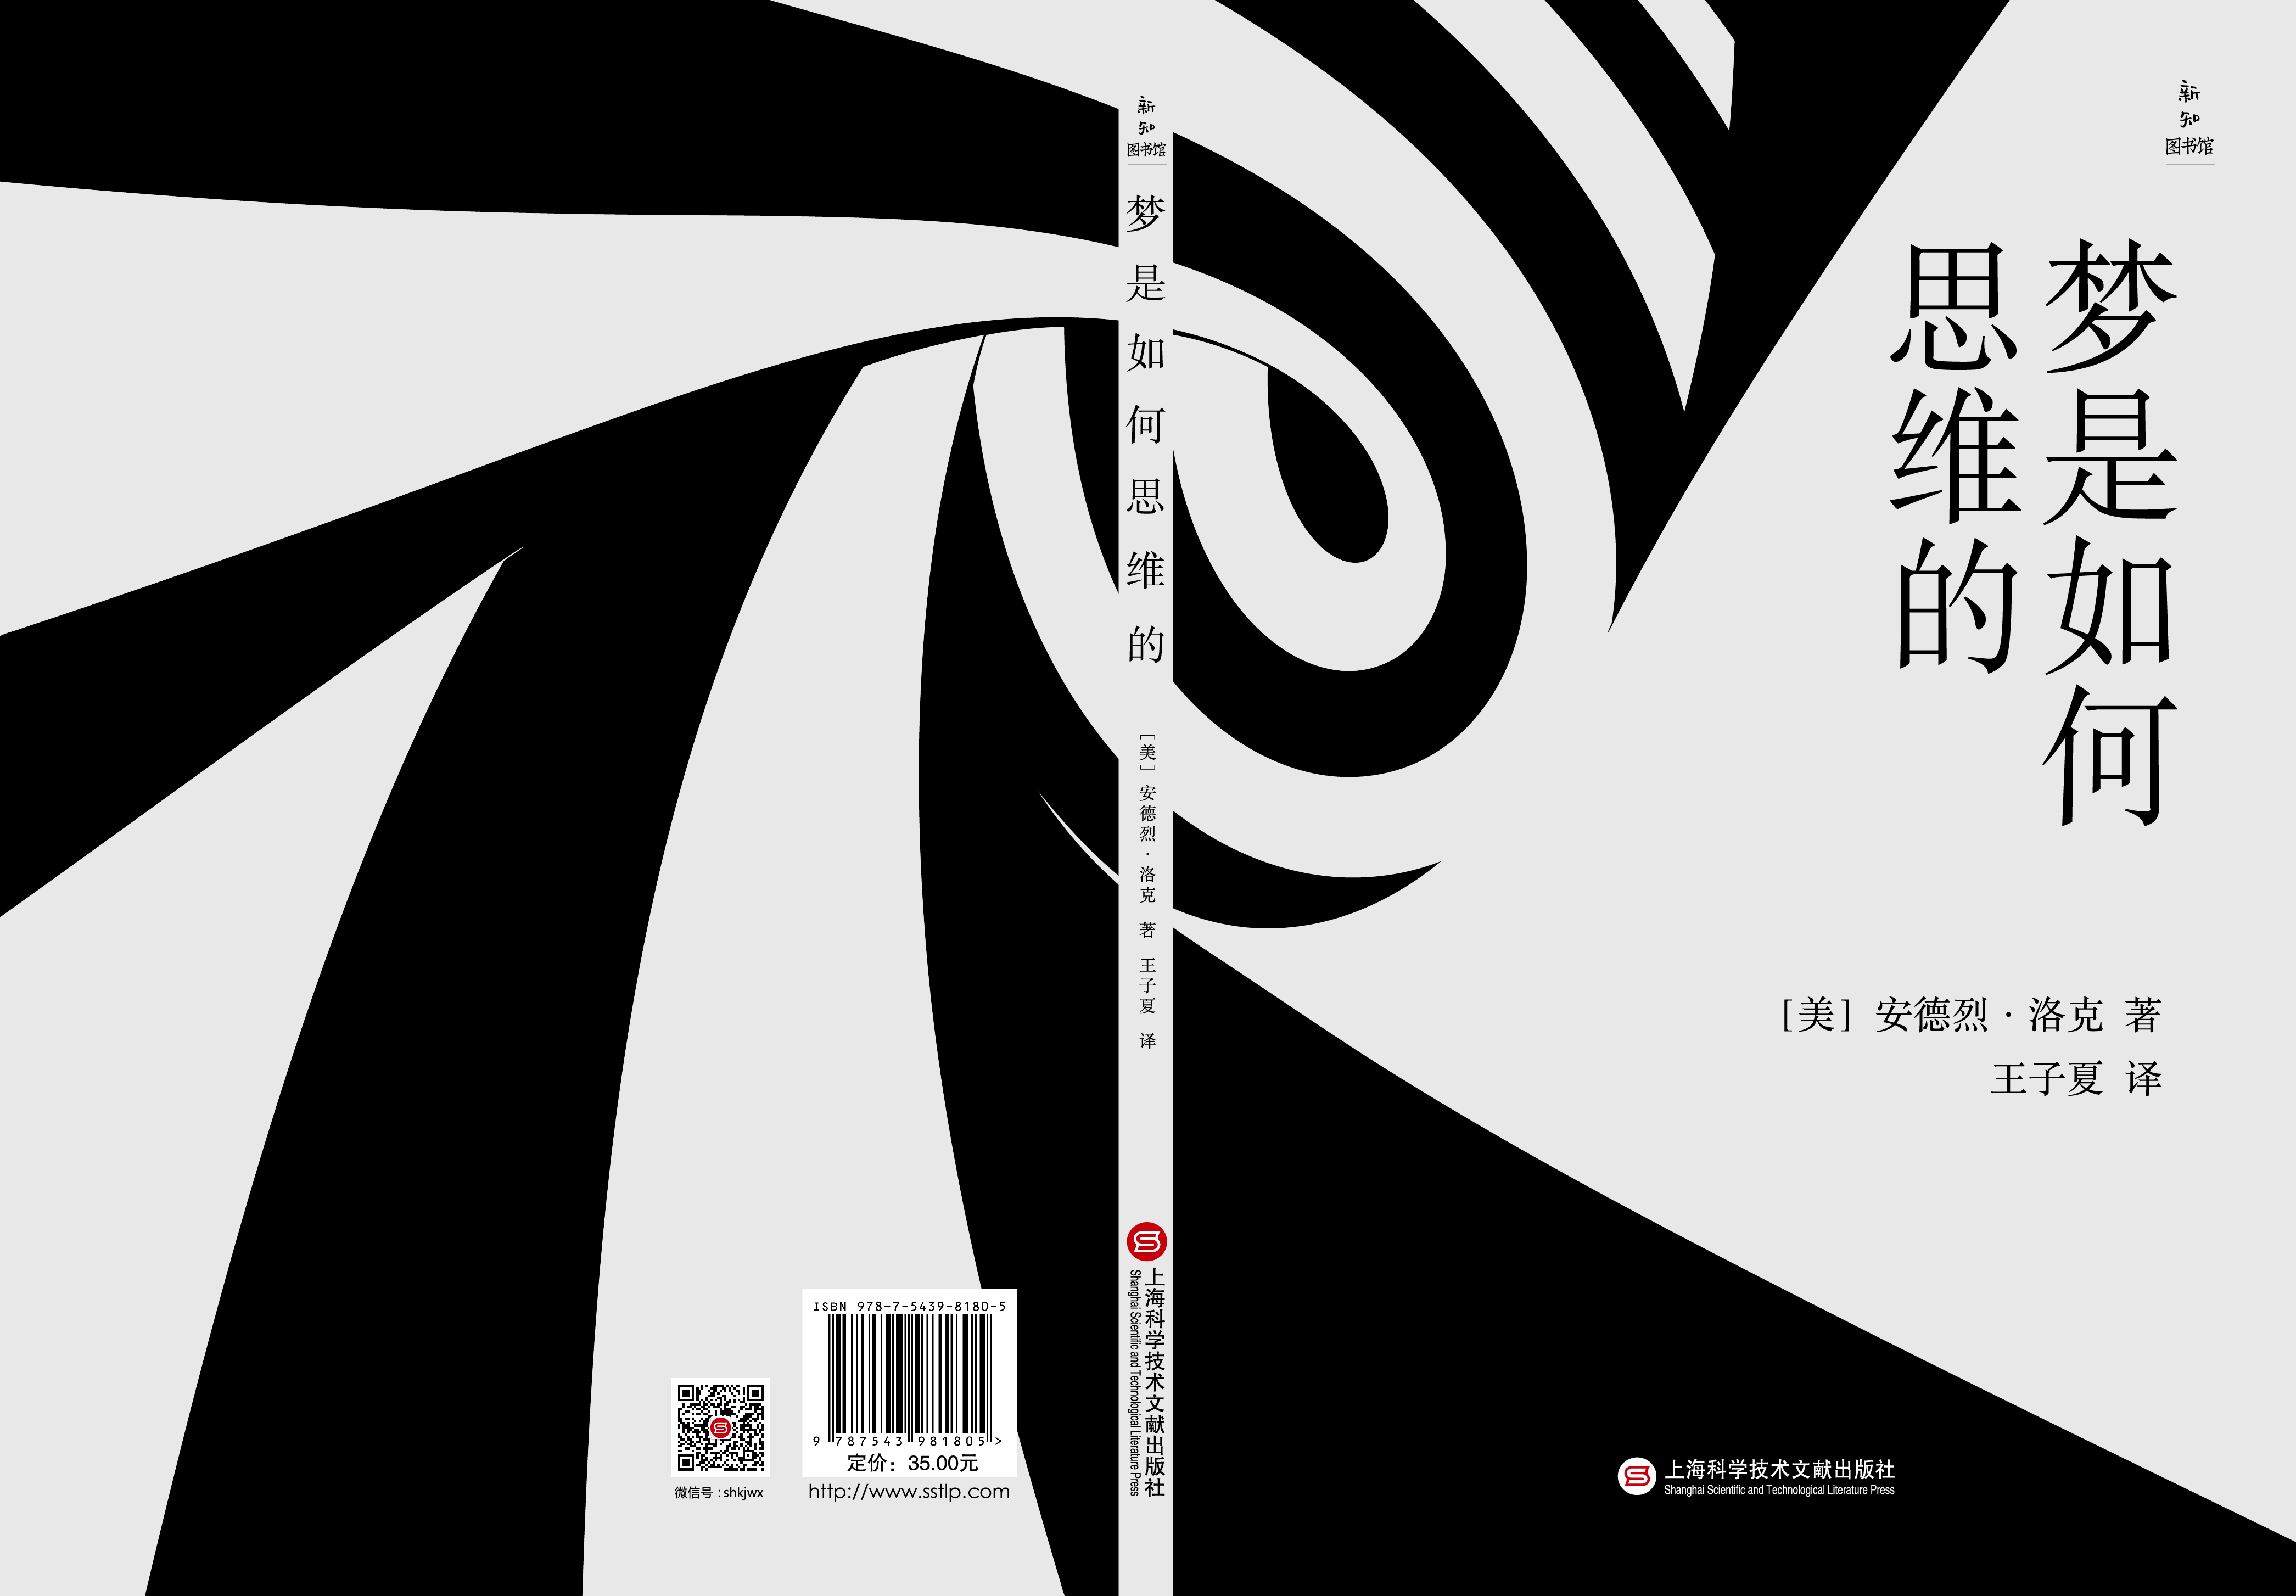 书籍封面设计 l 排版设计 l 中/韩文版